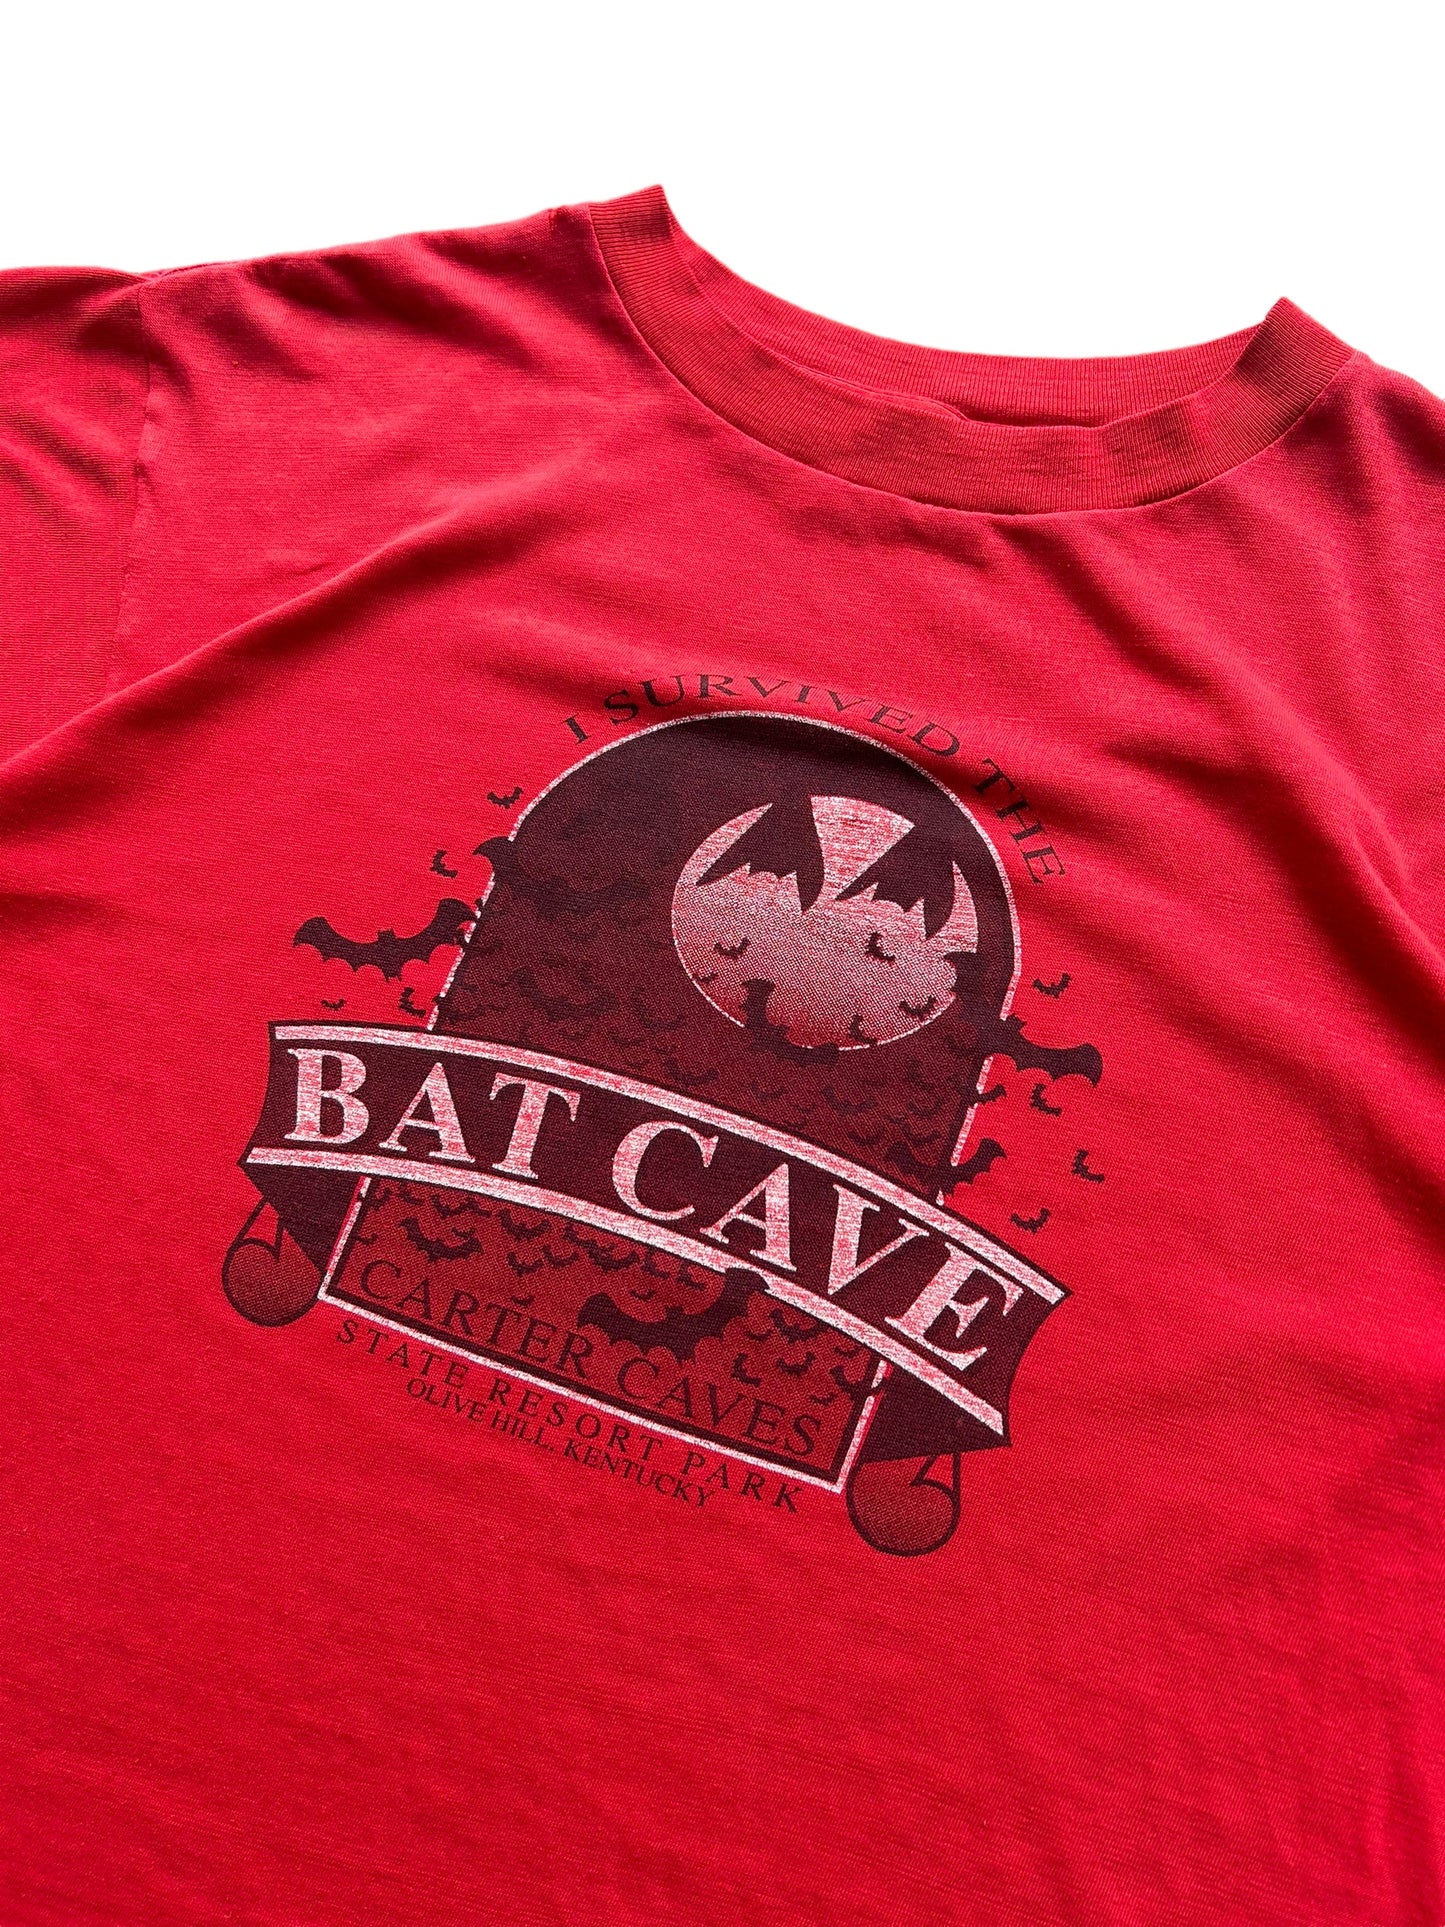 90's Bat Cave Tee